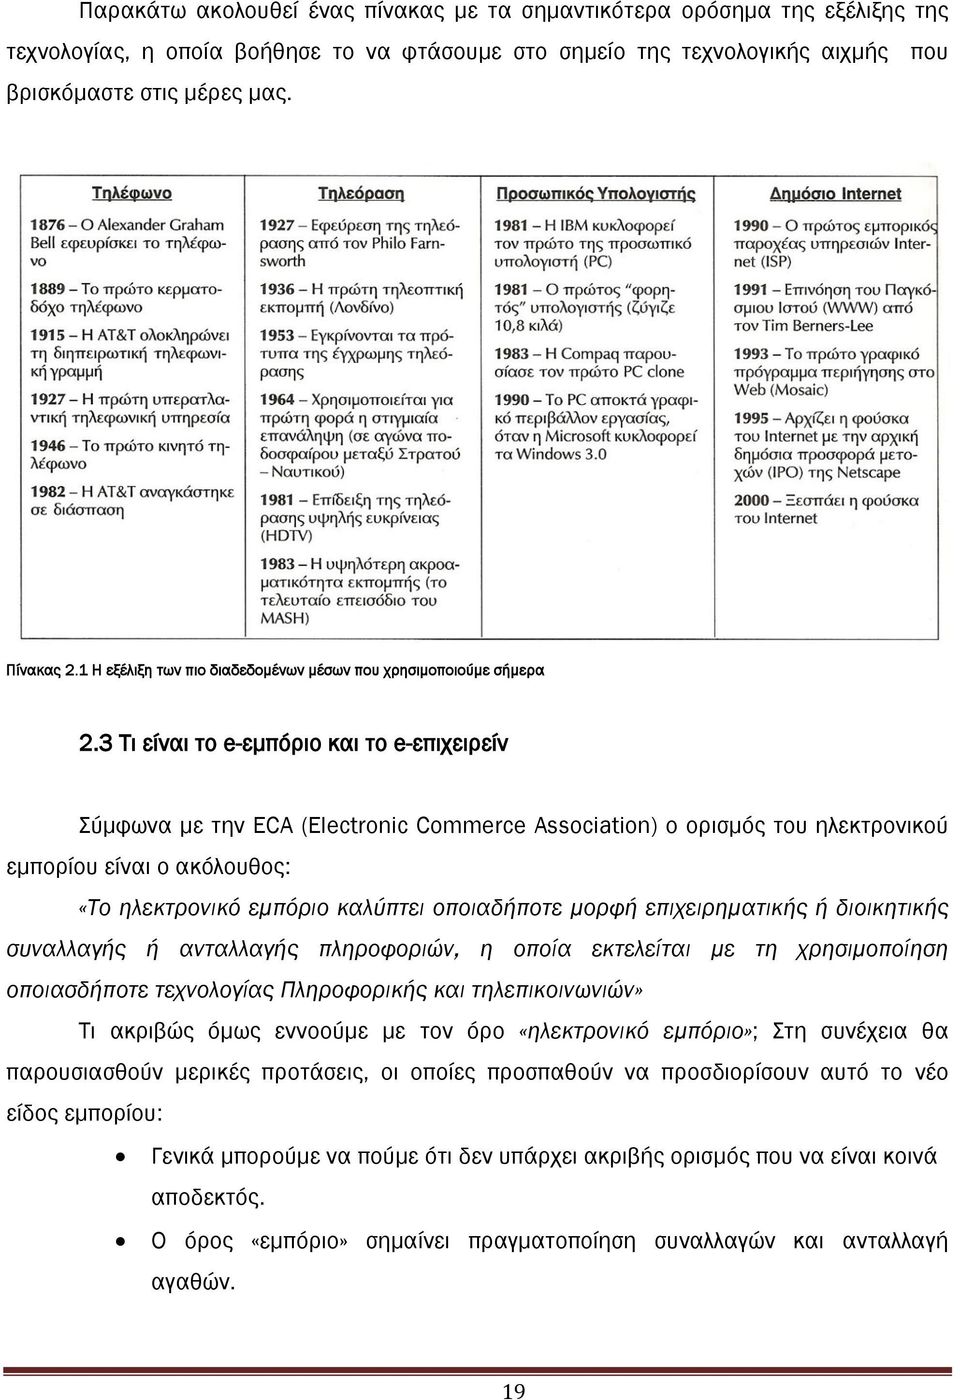 3 Σι είναι το e-εμπόριο και το e-επιχειρείν ύμφωνα με την ECA (Electronic Commerce Association) ο ορισμός του ηλεκτρονικού εμπορίου είναι ο ακόλουθος: «Το ηλεκτρονικό εμπόριο καλύπτει οποιαδήποτε